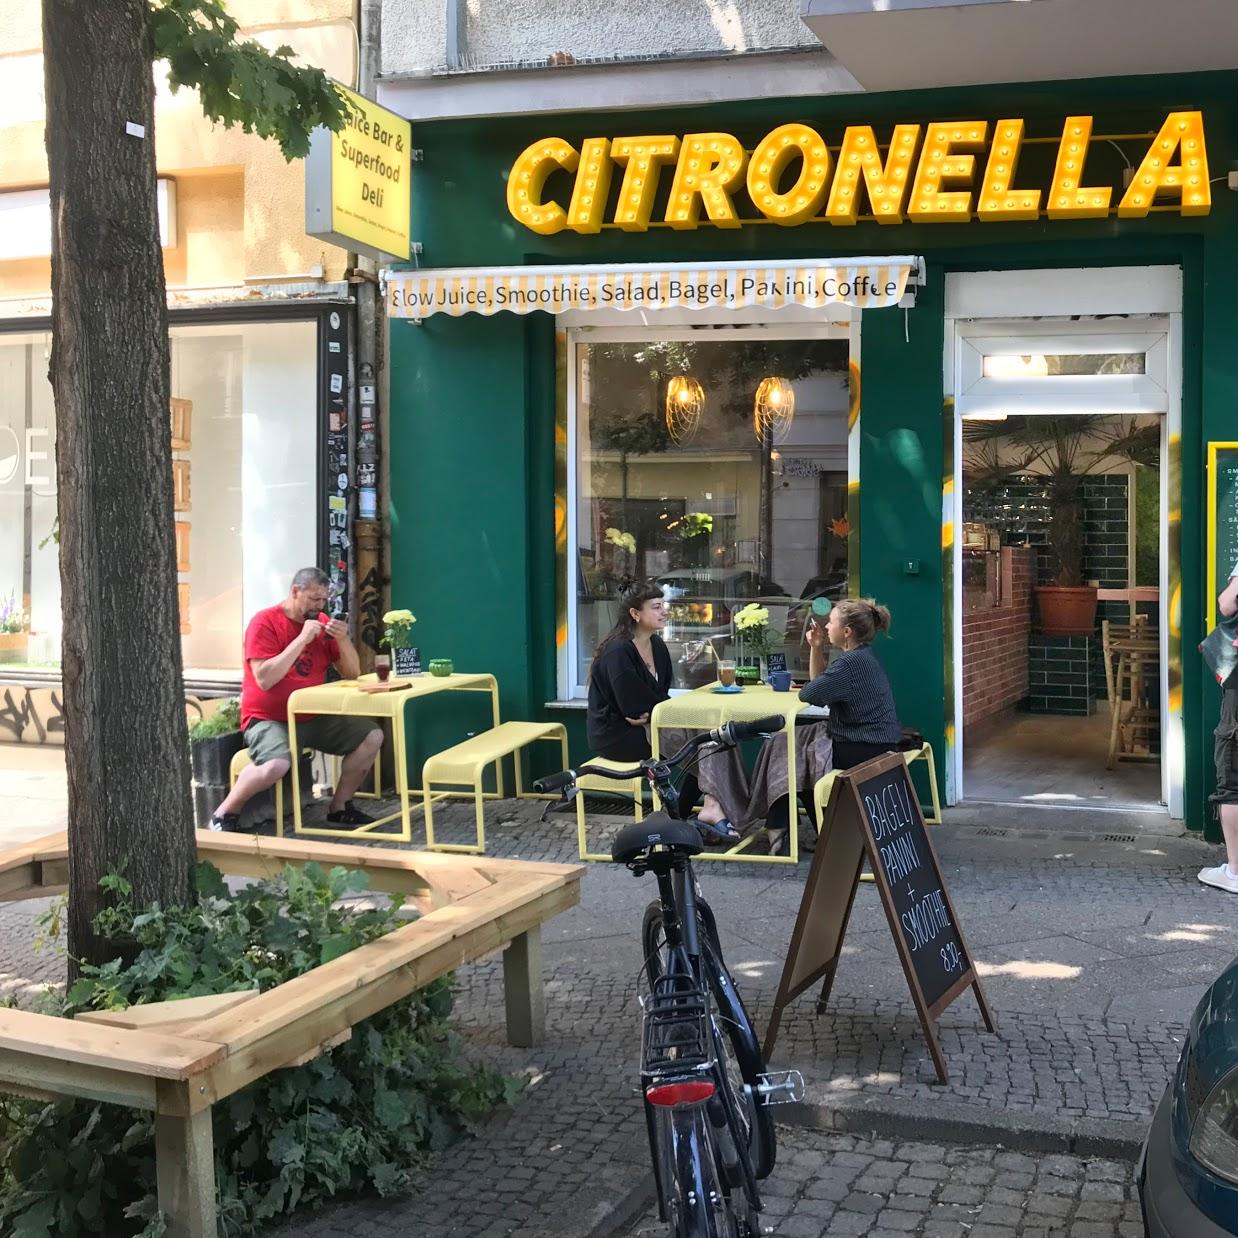 Restaurant "Citronella - Superfood Deli & Juice Bar" in Berlin